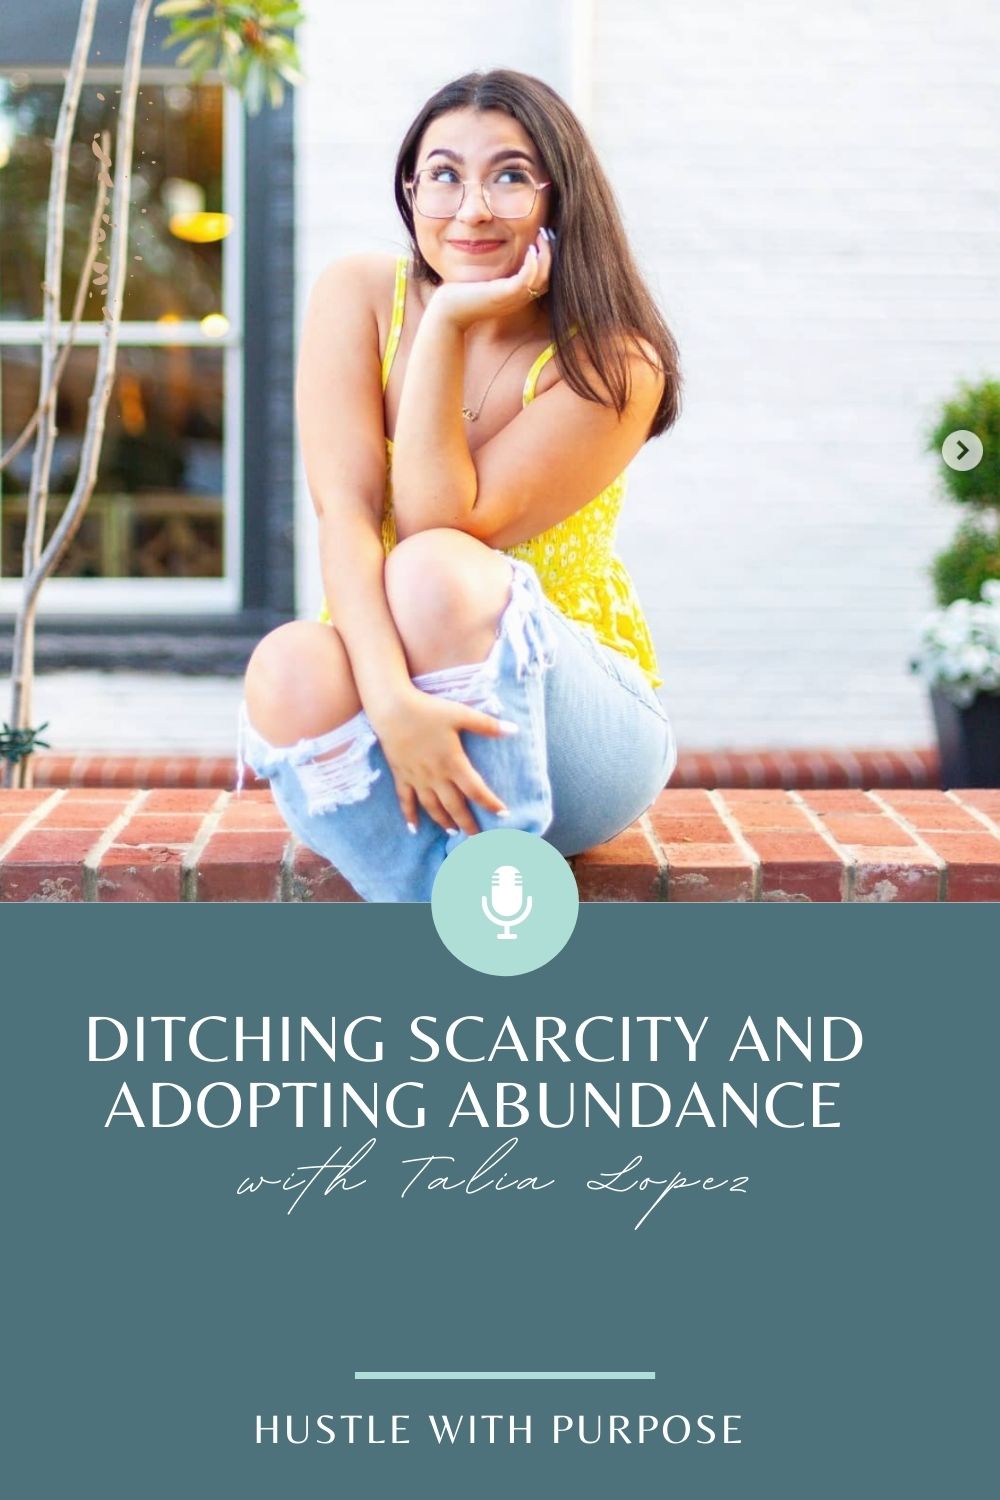 adopting abundance